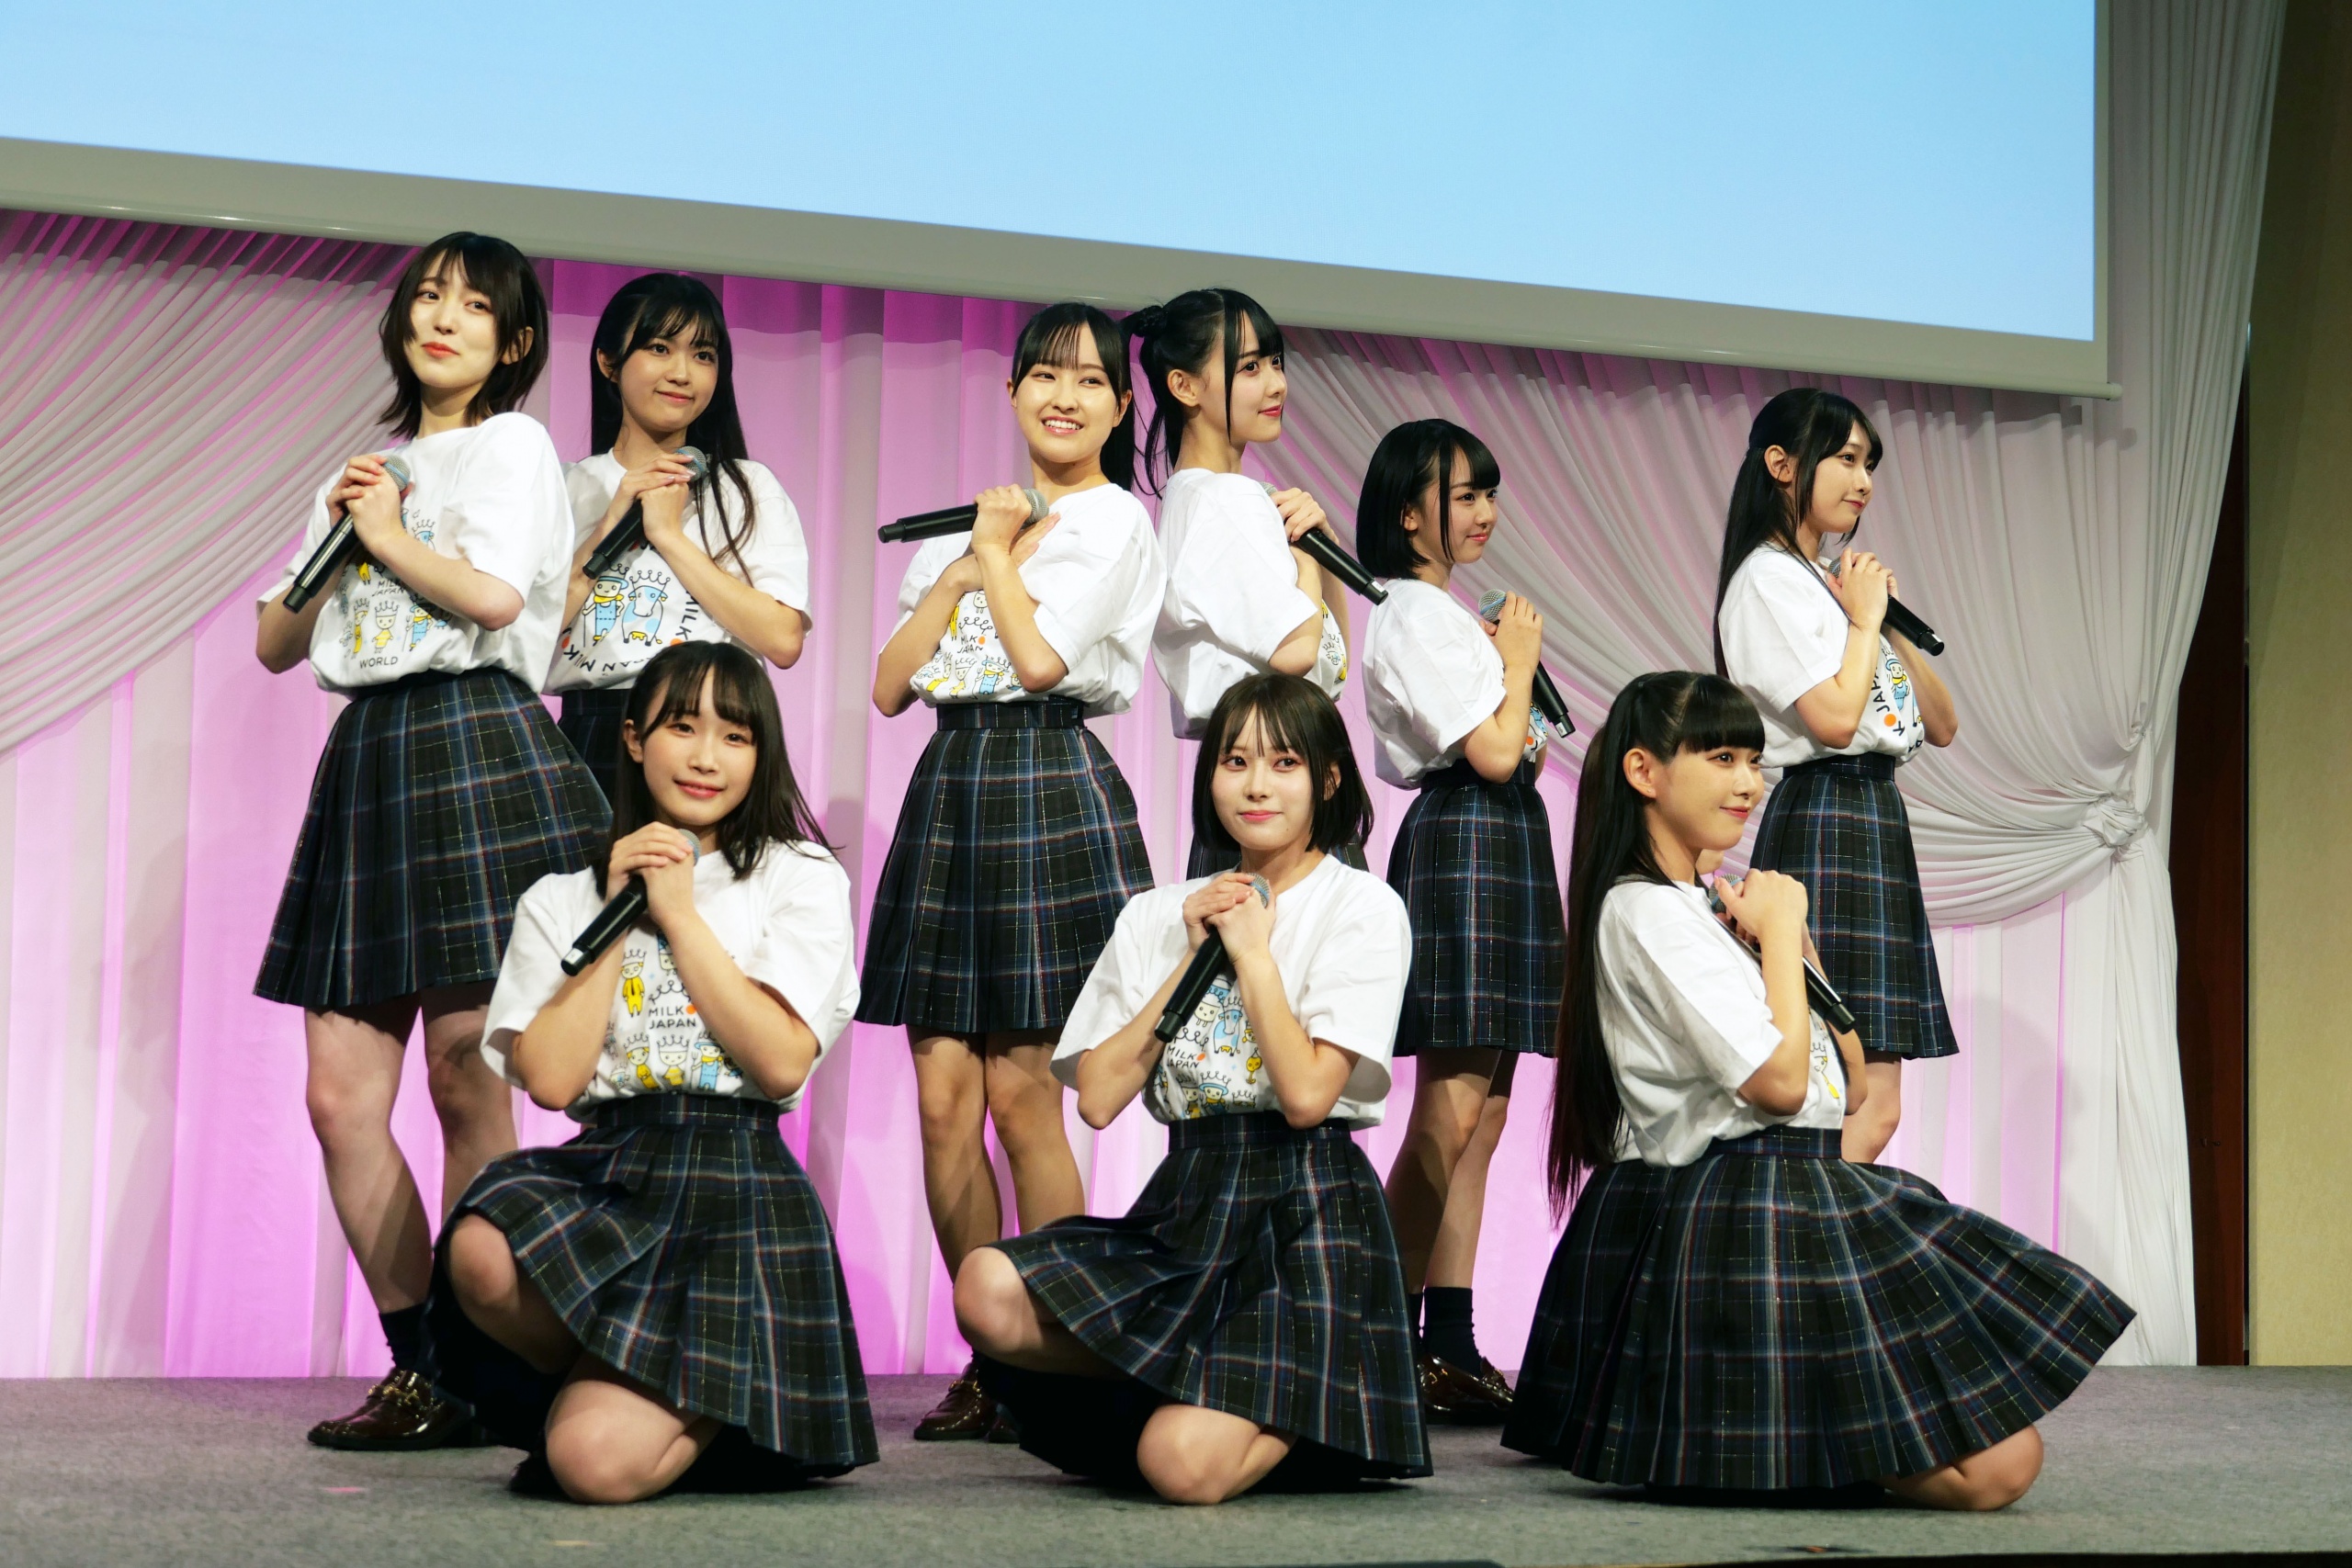 アイドルグループ『高嶺のなでしこ』が登場 / 第14回ALL JAPANナチュラルチーズコンテスト